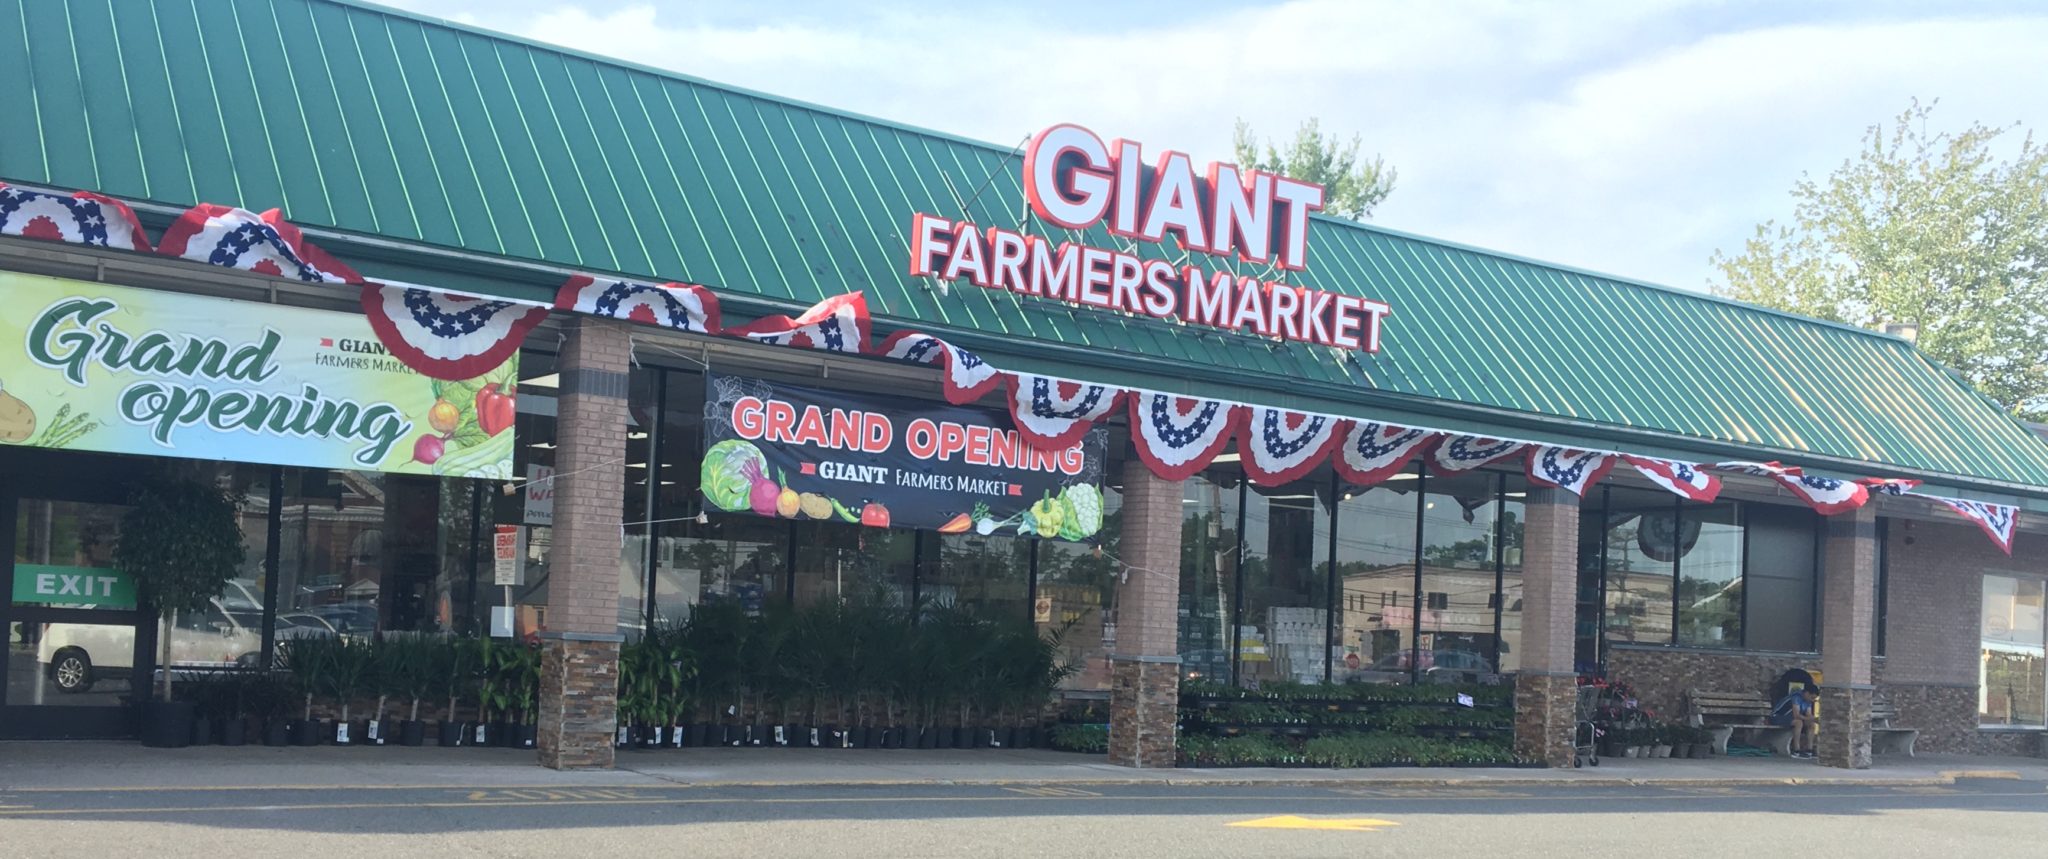 Giant Farmers Market - Waldwick, NJ